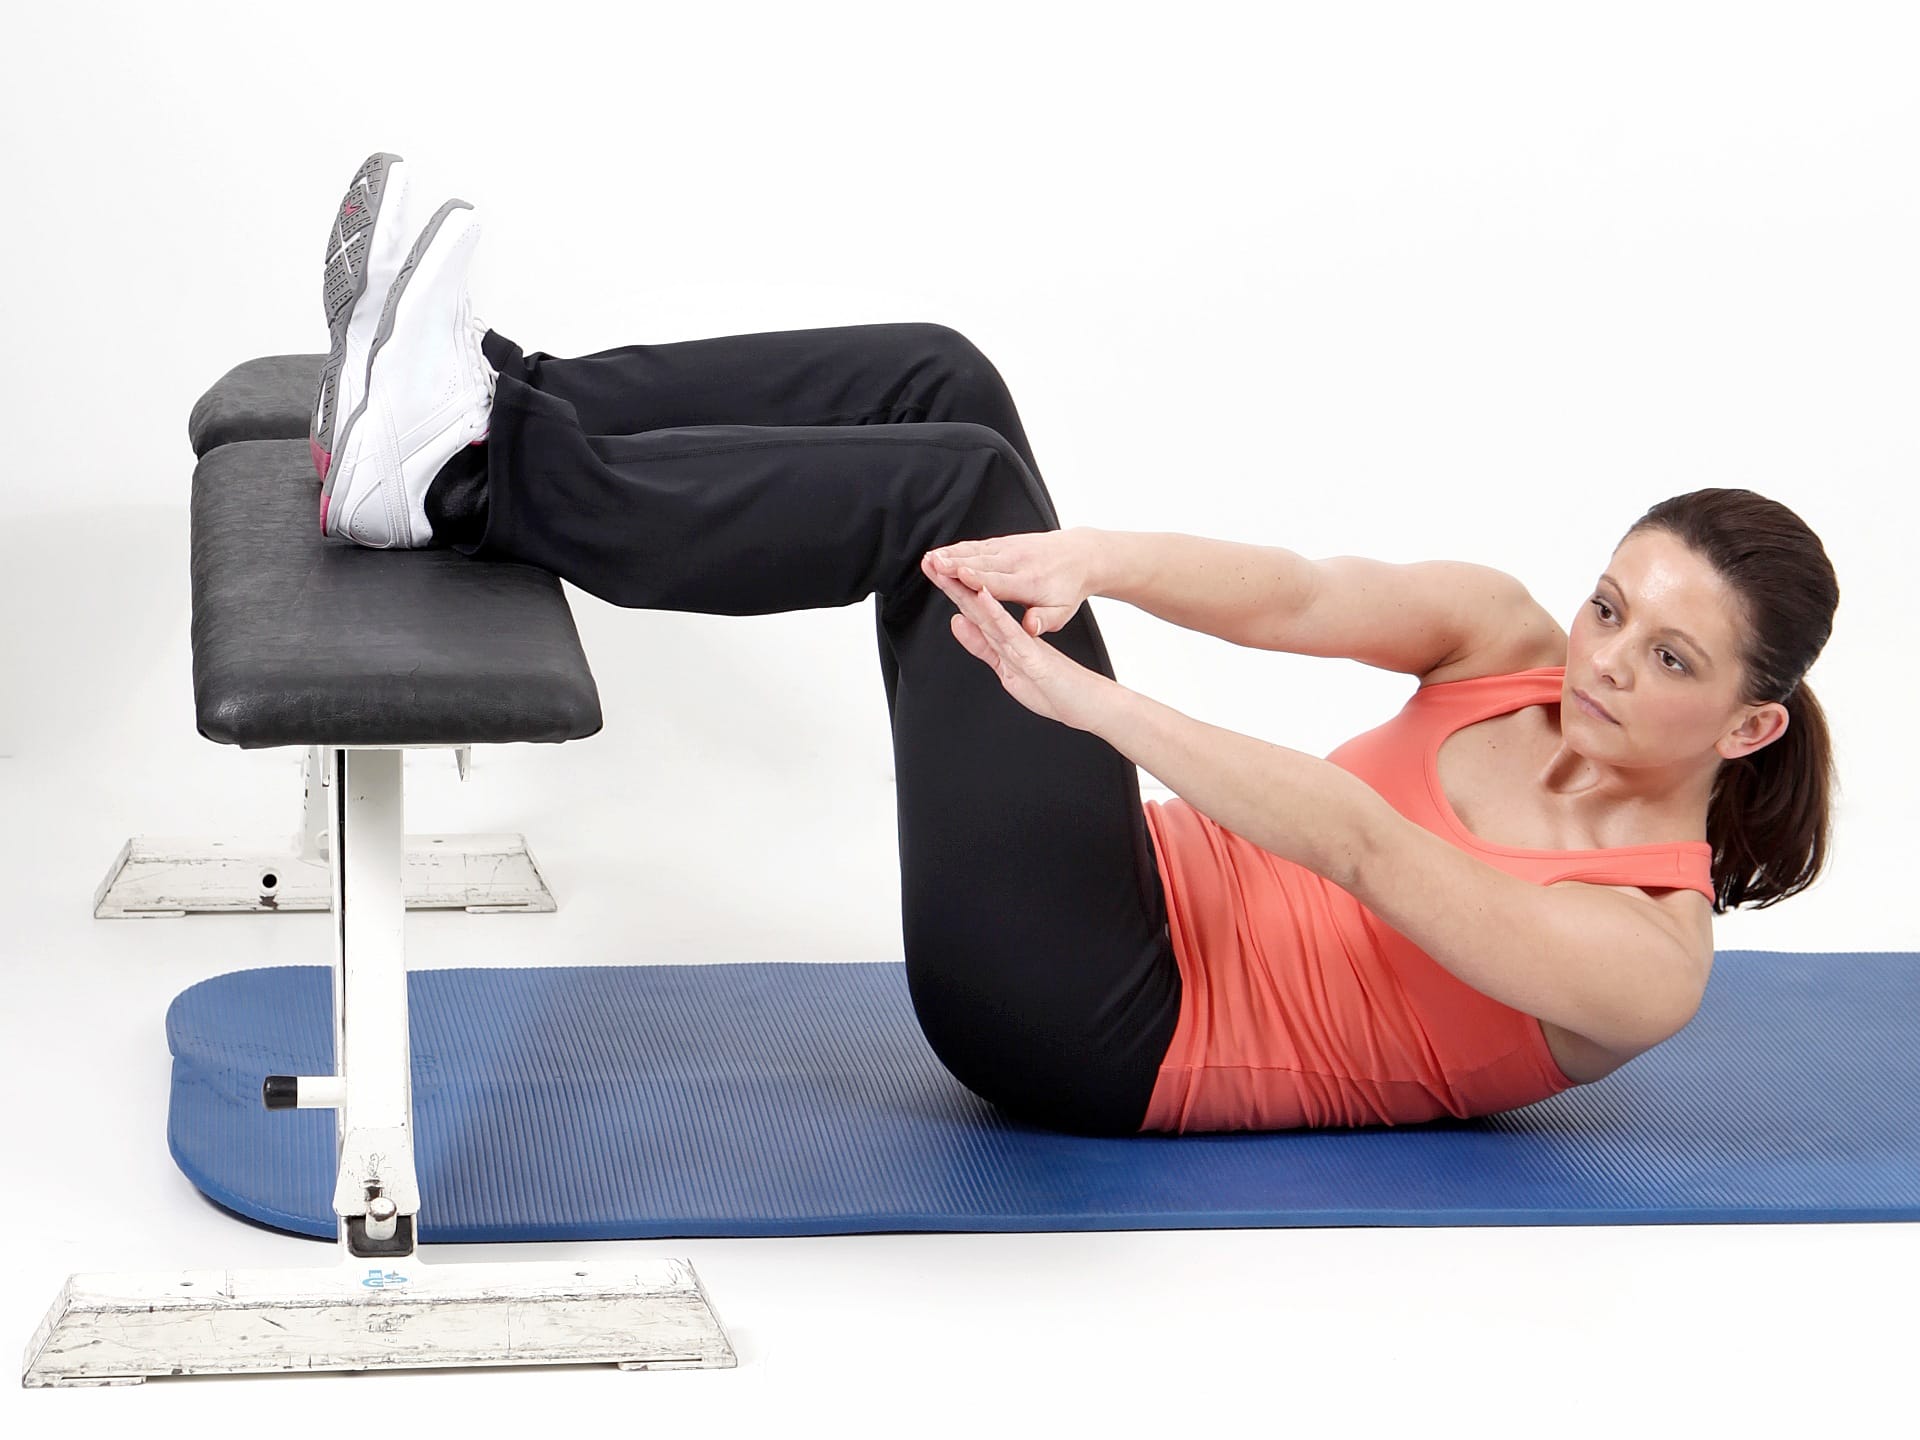 Mit dieser Variante trainiert man vor allem die seitlichen Bauchmuskeln besonders intensiv. Sinnvolles Sixpack-Training kombiniert mehrere Übungsformenn.